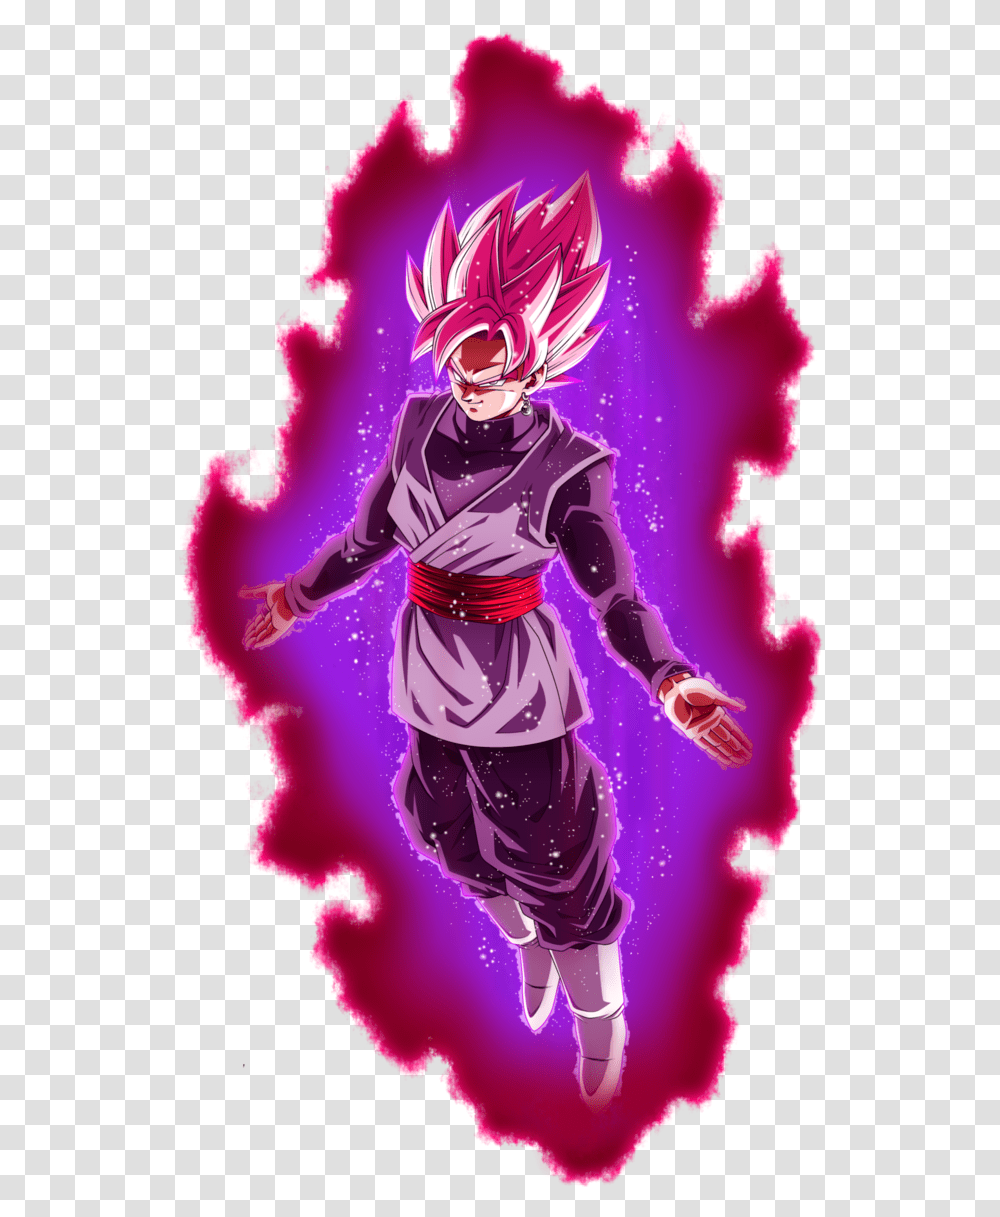 Majin Goku Black Super Saiyan Rose De Goku Black Rose, Graphics, Art, Purple, Person Transparent Png